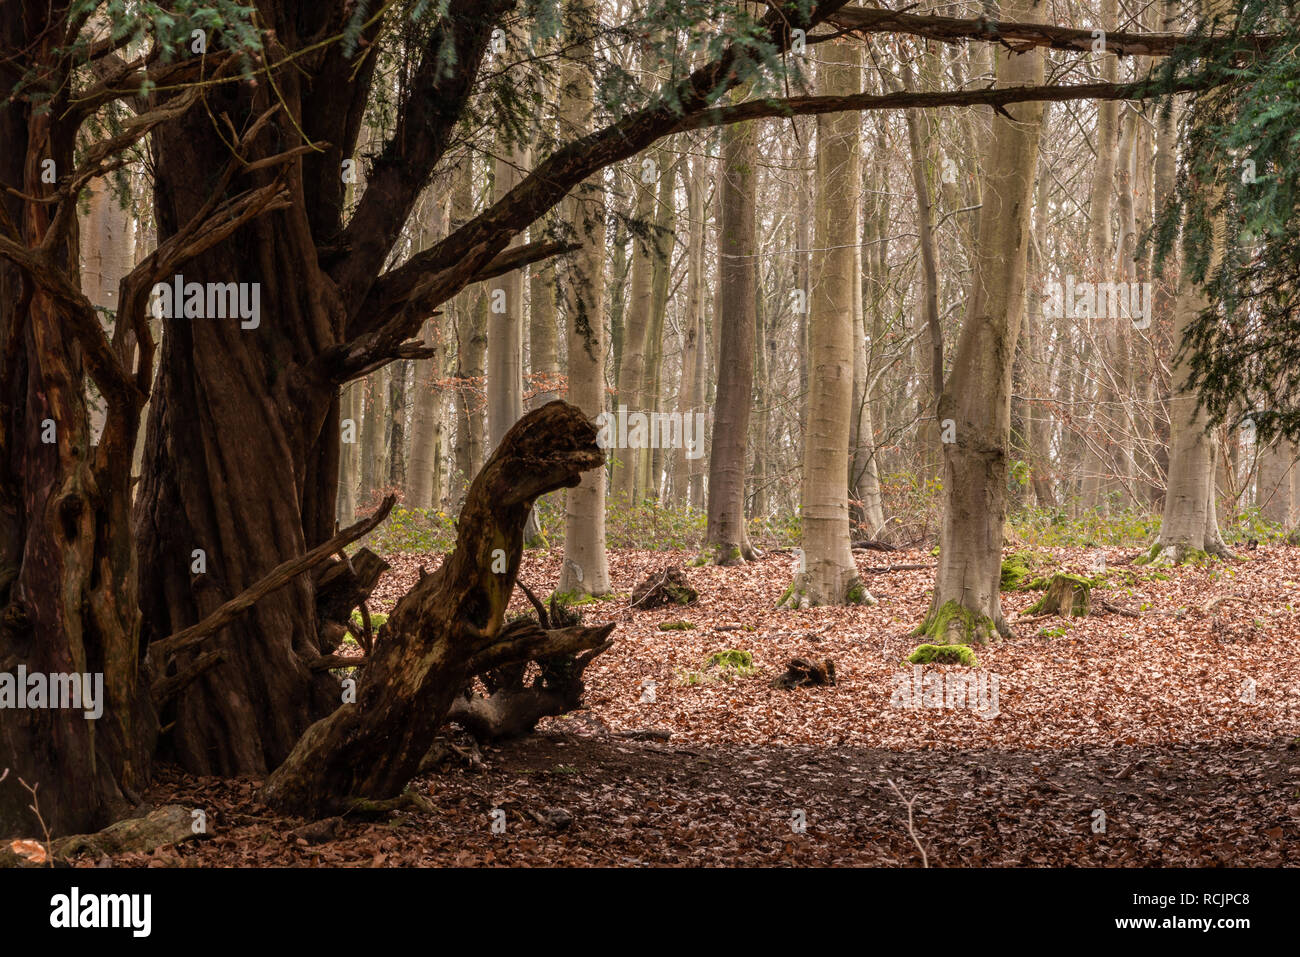 Monster-like tree, Blackwood Forest, Hampshire, UK Stock Photo